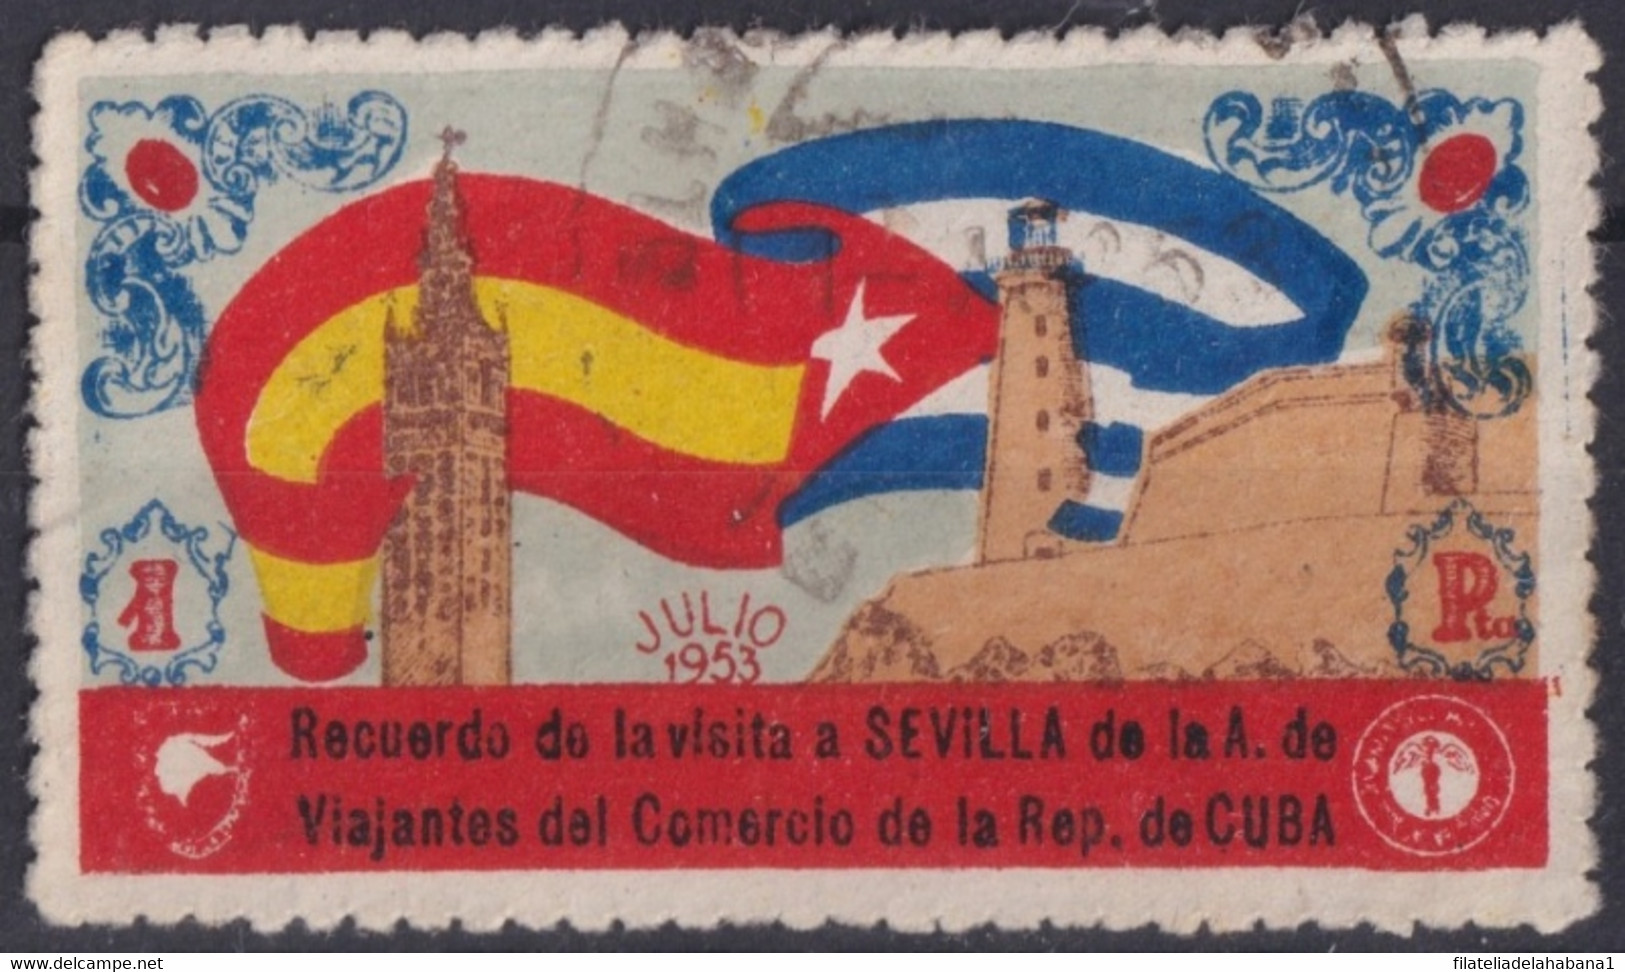 VI-517 CUBA REPUBLICA 1953 CINDERELLA VIAJANTES DEL COMERCIO VISTAN SEVILLA MORRO CASTLE. - Vignettes D'affranchissement (Frama)